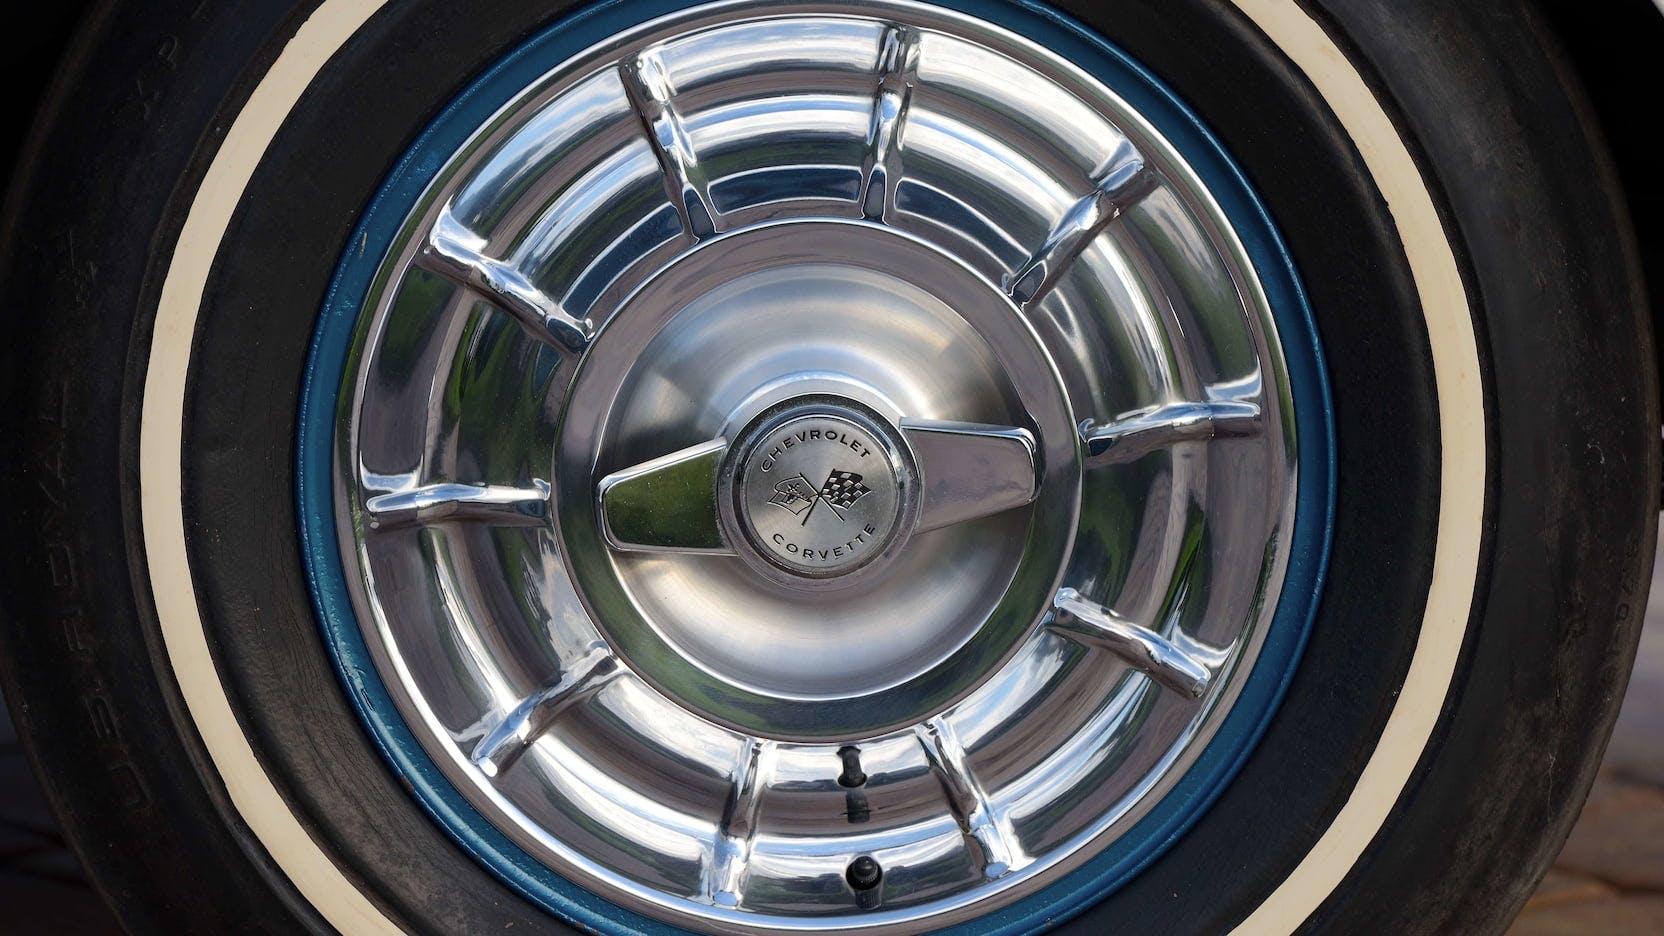 1957 Chevrolet Corvette Super Sport Show Car wheel hub detail